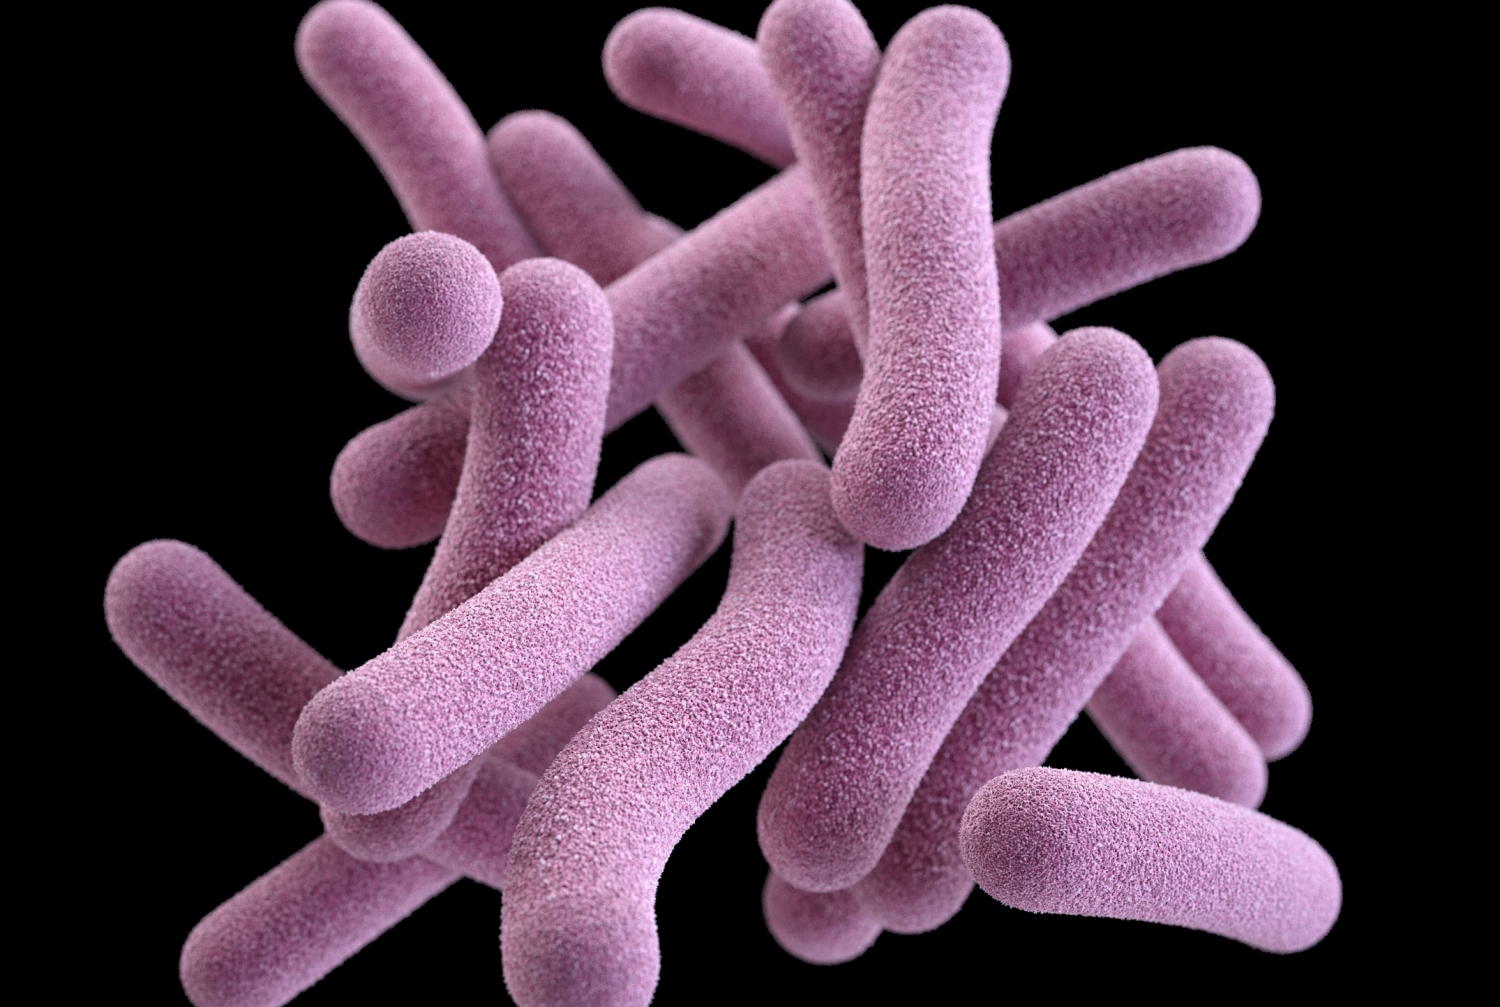 Tuberculosis bacteria. Credit: CDC